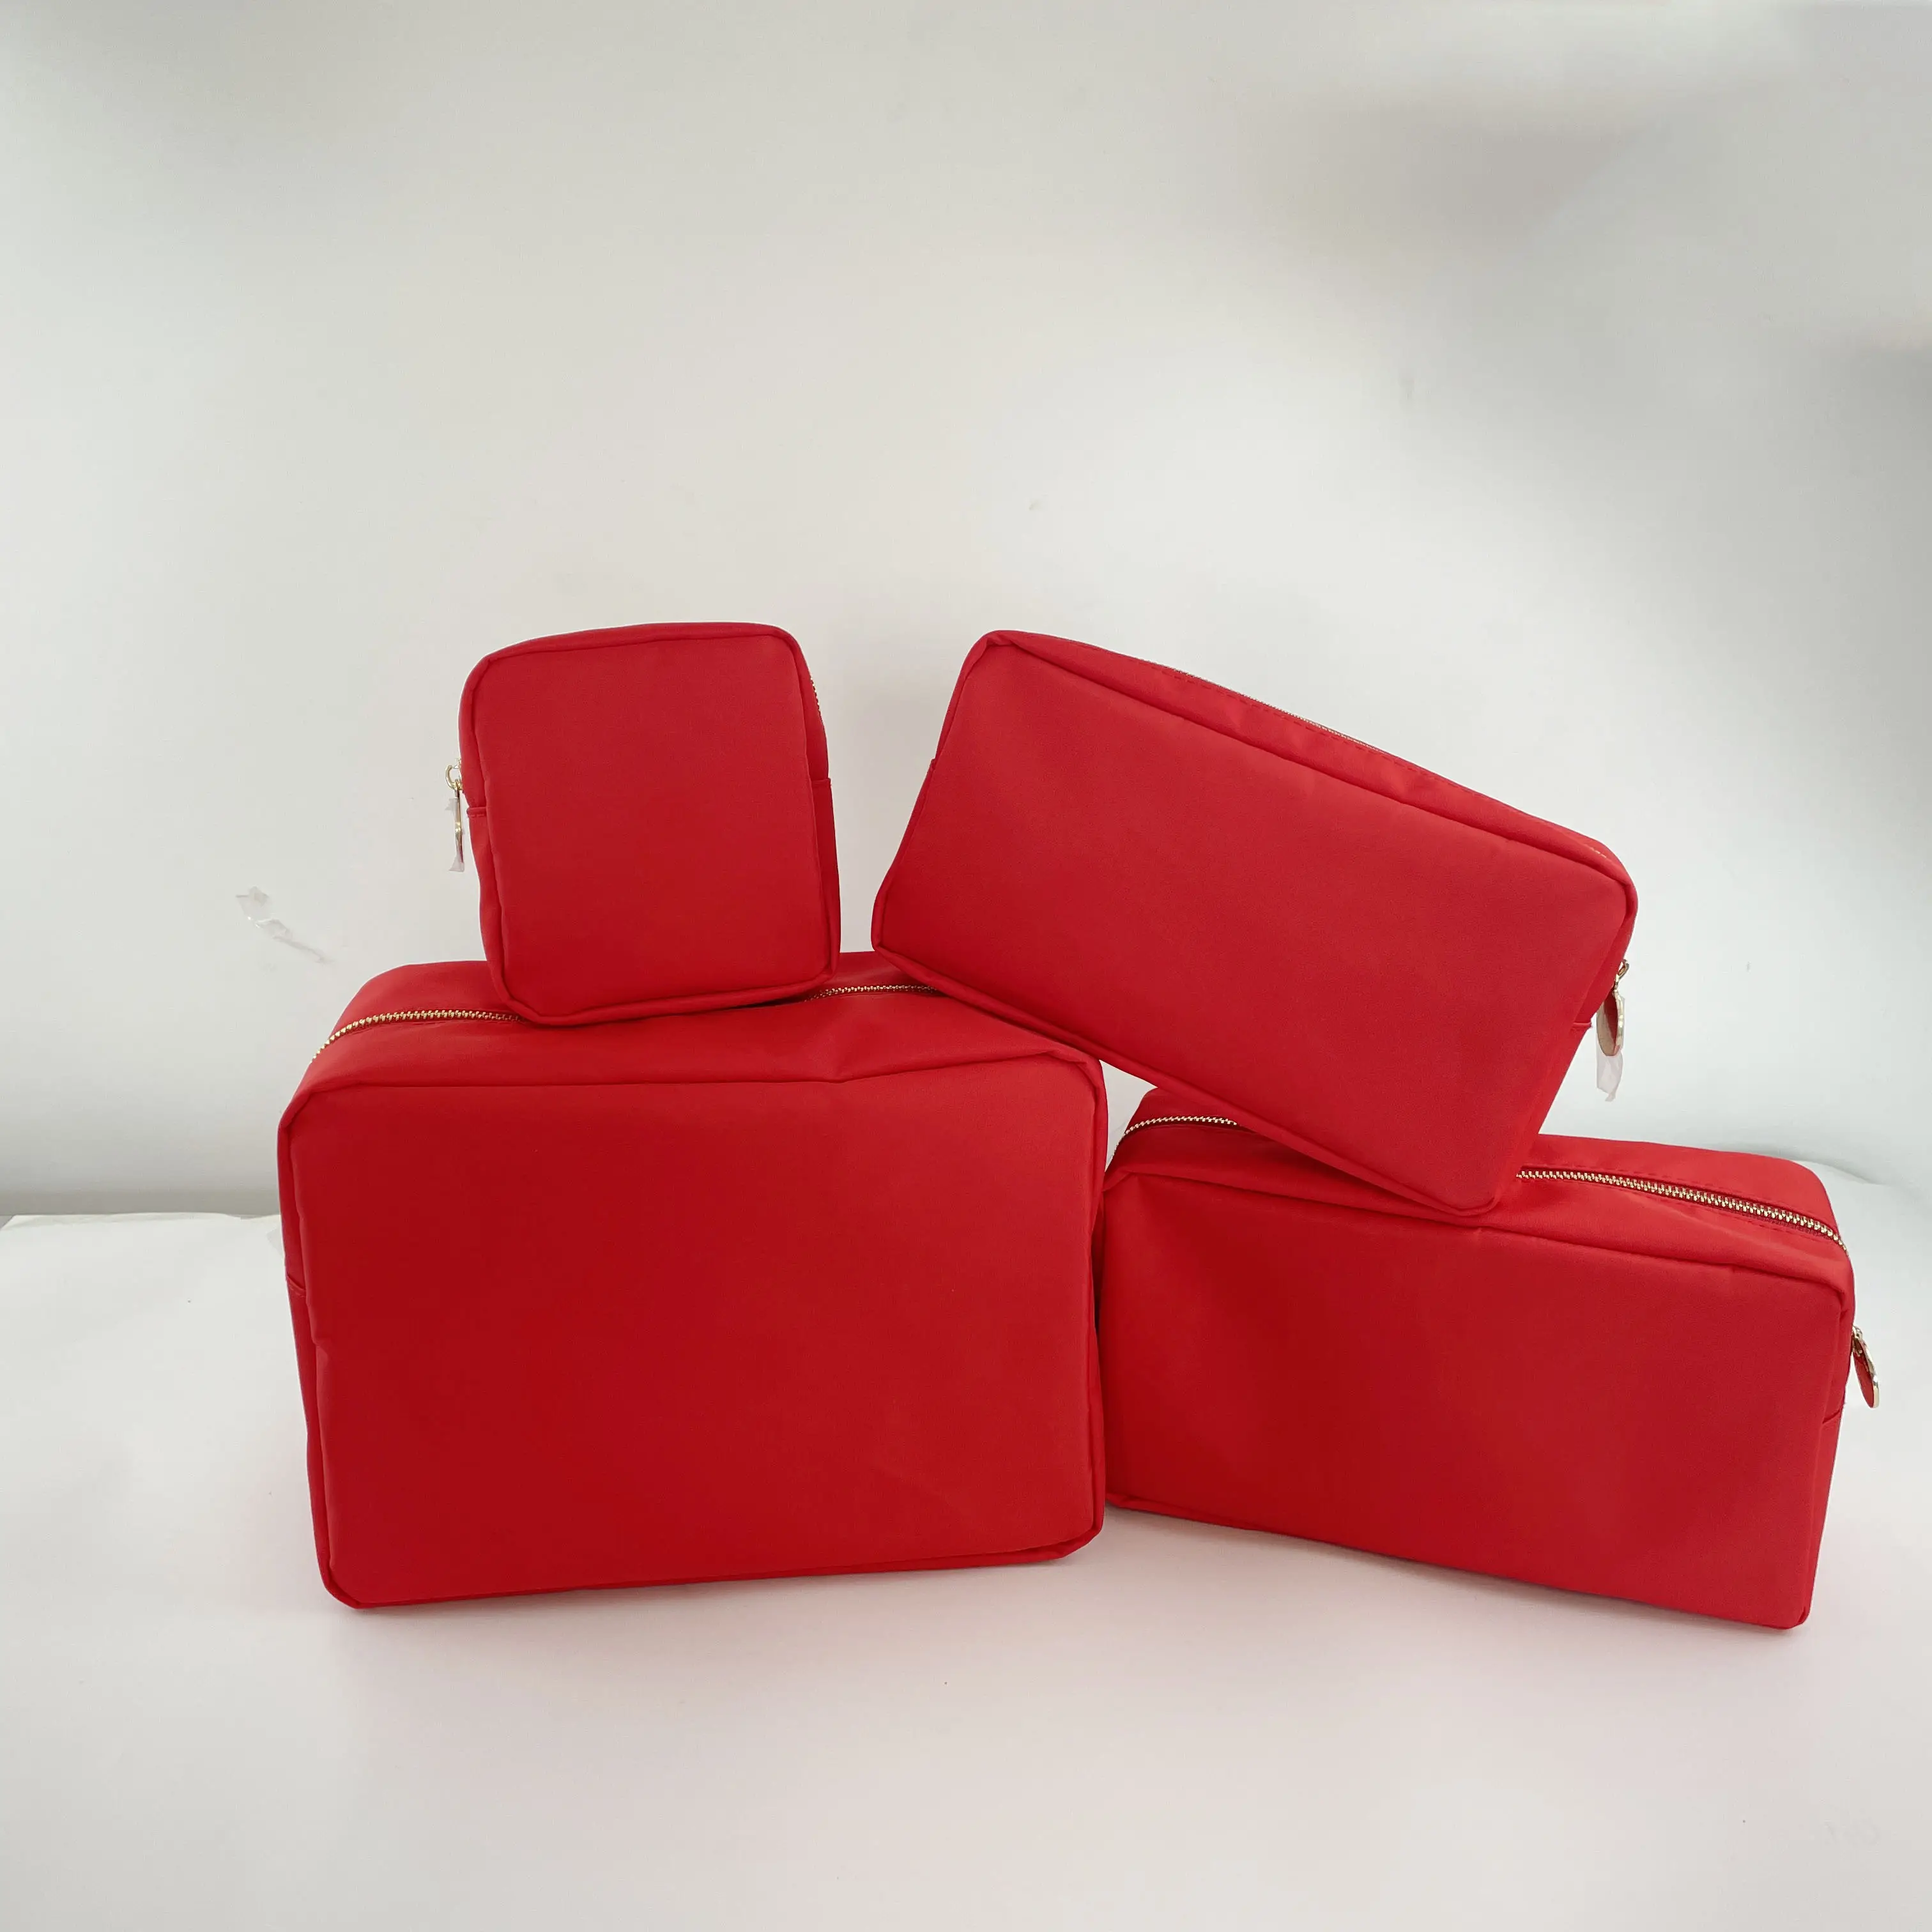 NO MOQ Stock S M L XL taglia rosso impermeabile nylon asciugamano da viaggio patch per ricamo logo piccoli sacchetti cosmetici rossi